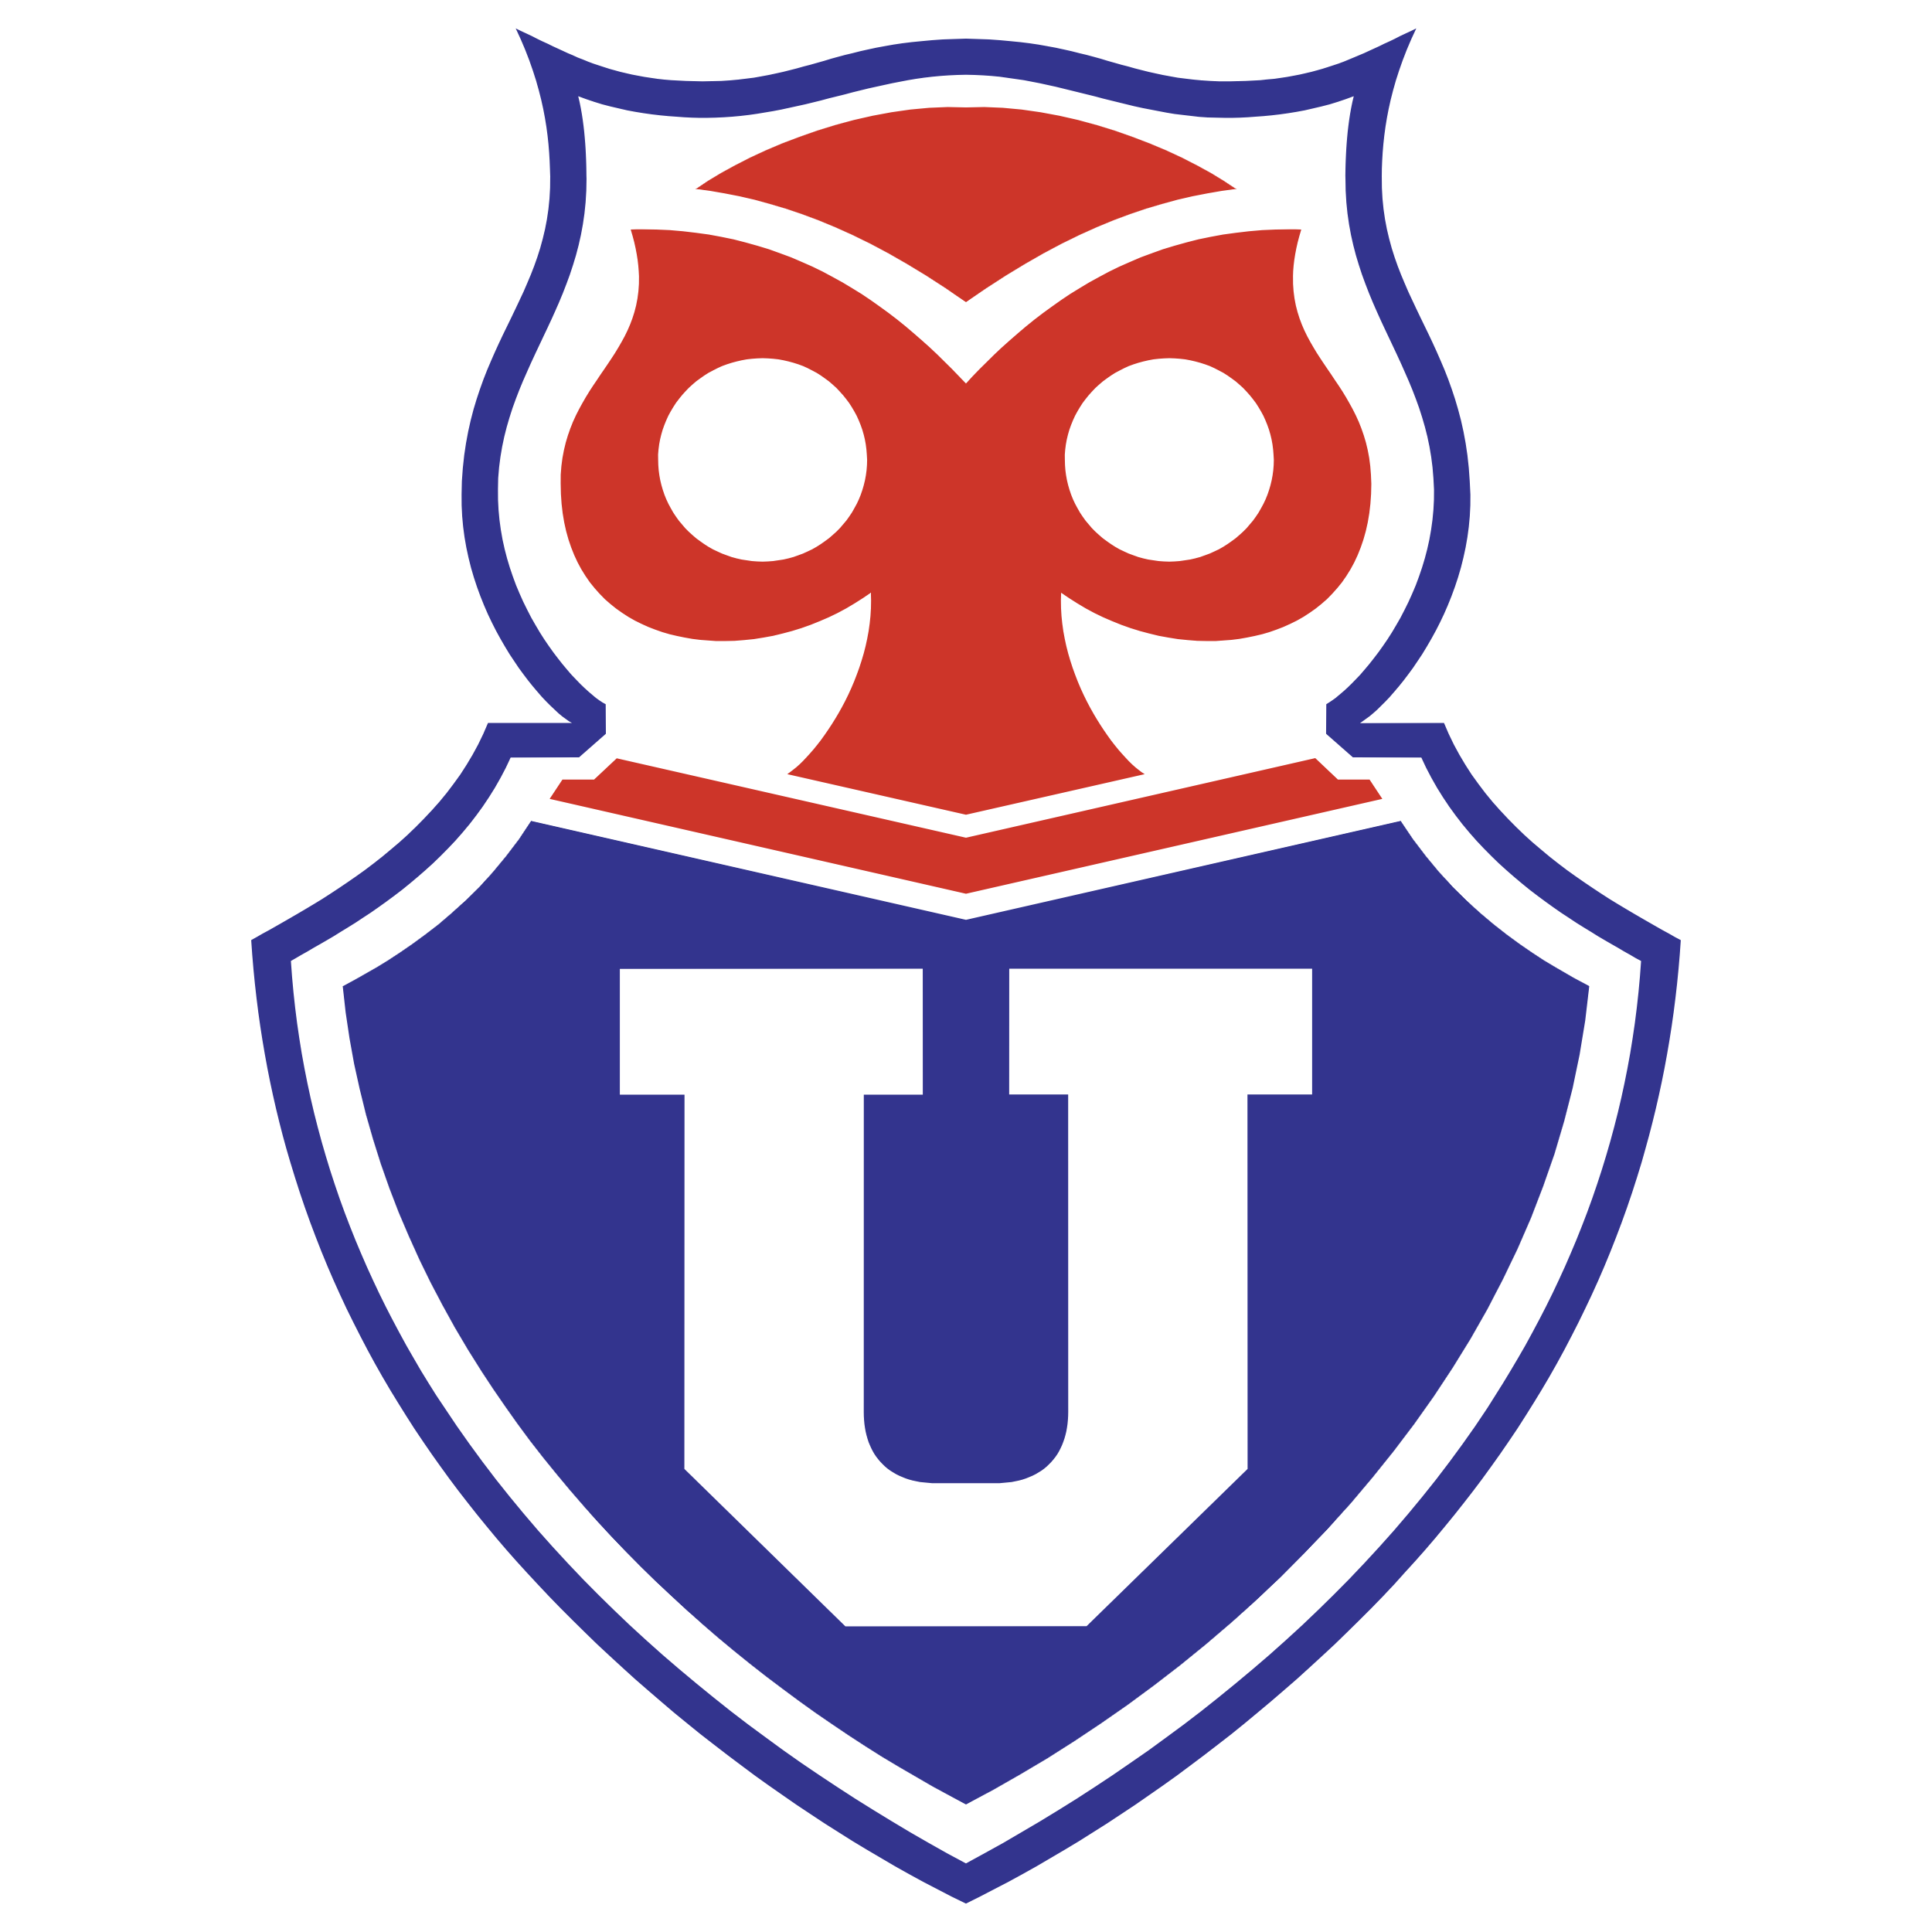 Universidad de Chile Logos Download